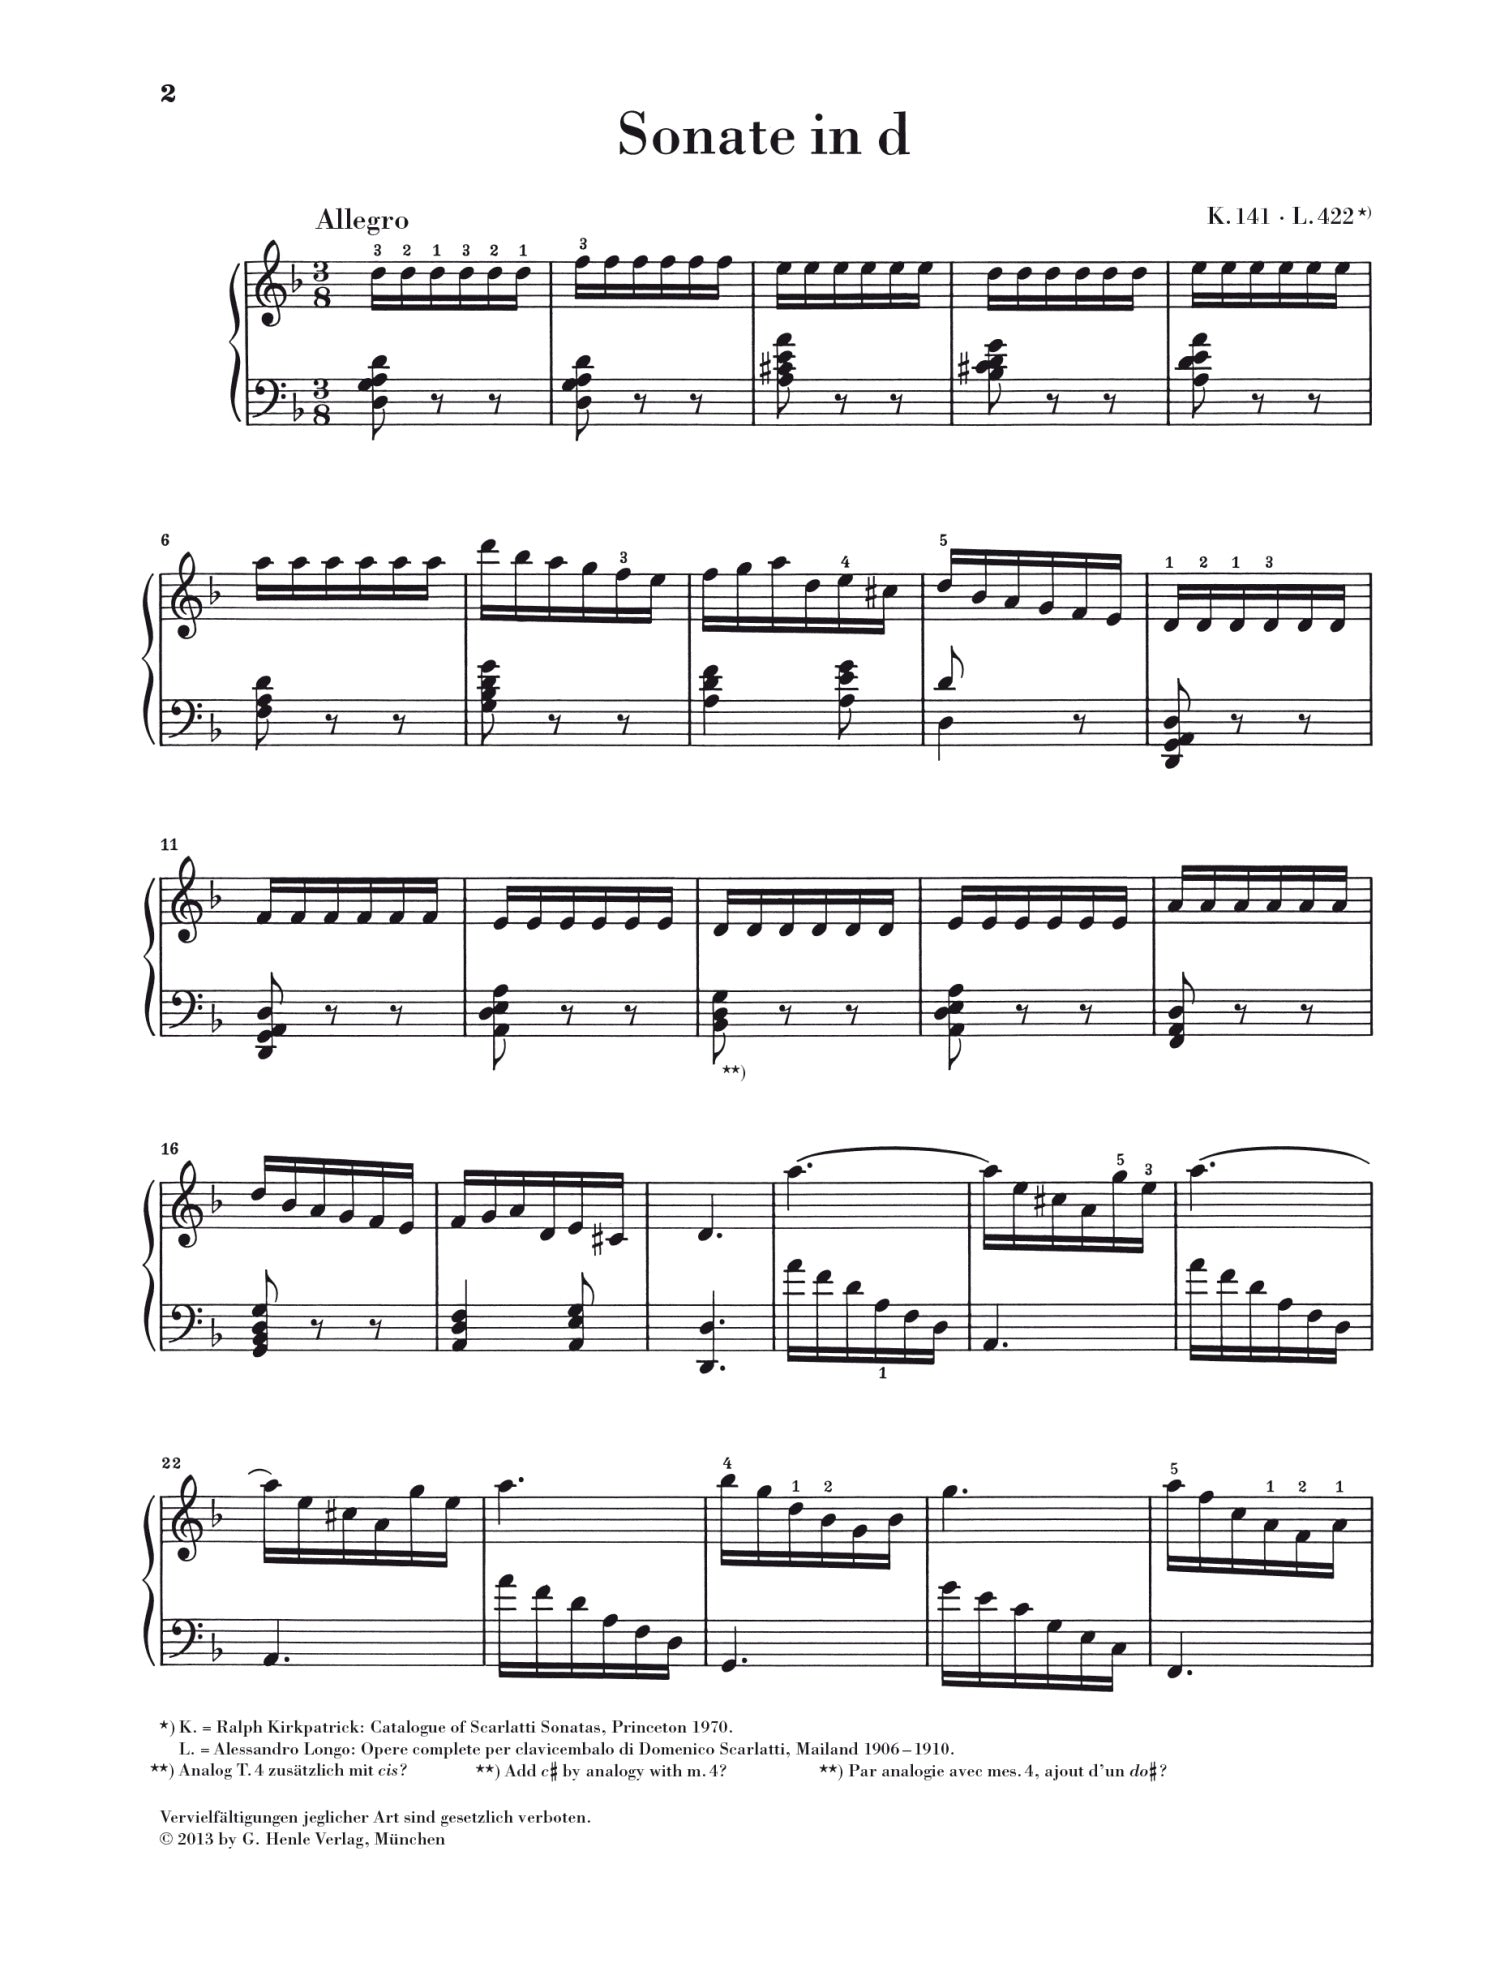 Scarlatti: Piano Sonata in D Minor K 141, L 422